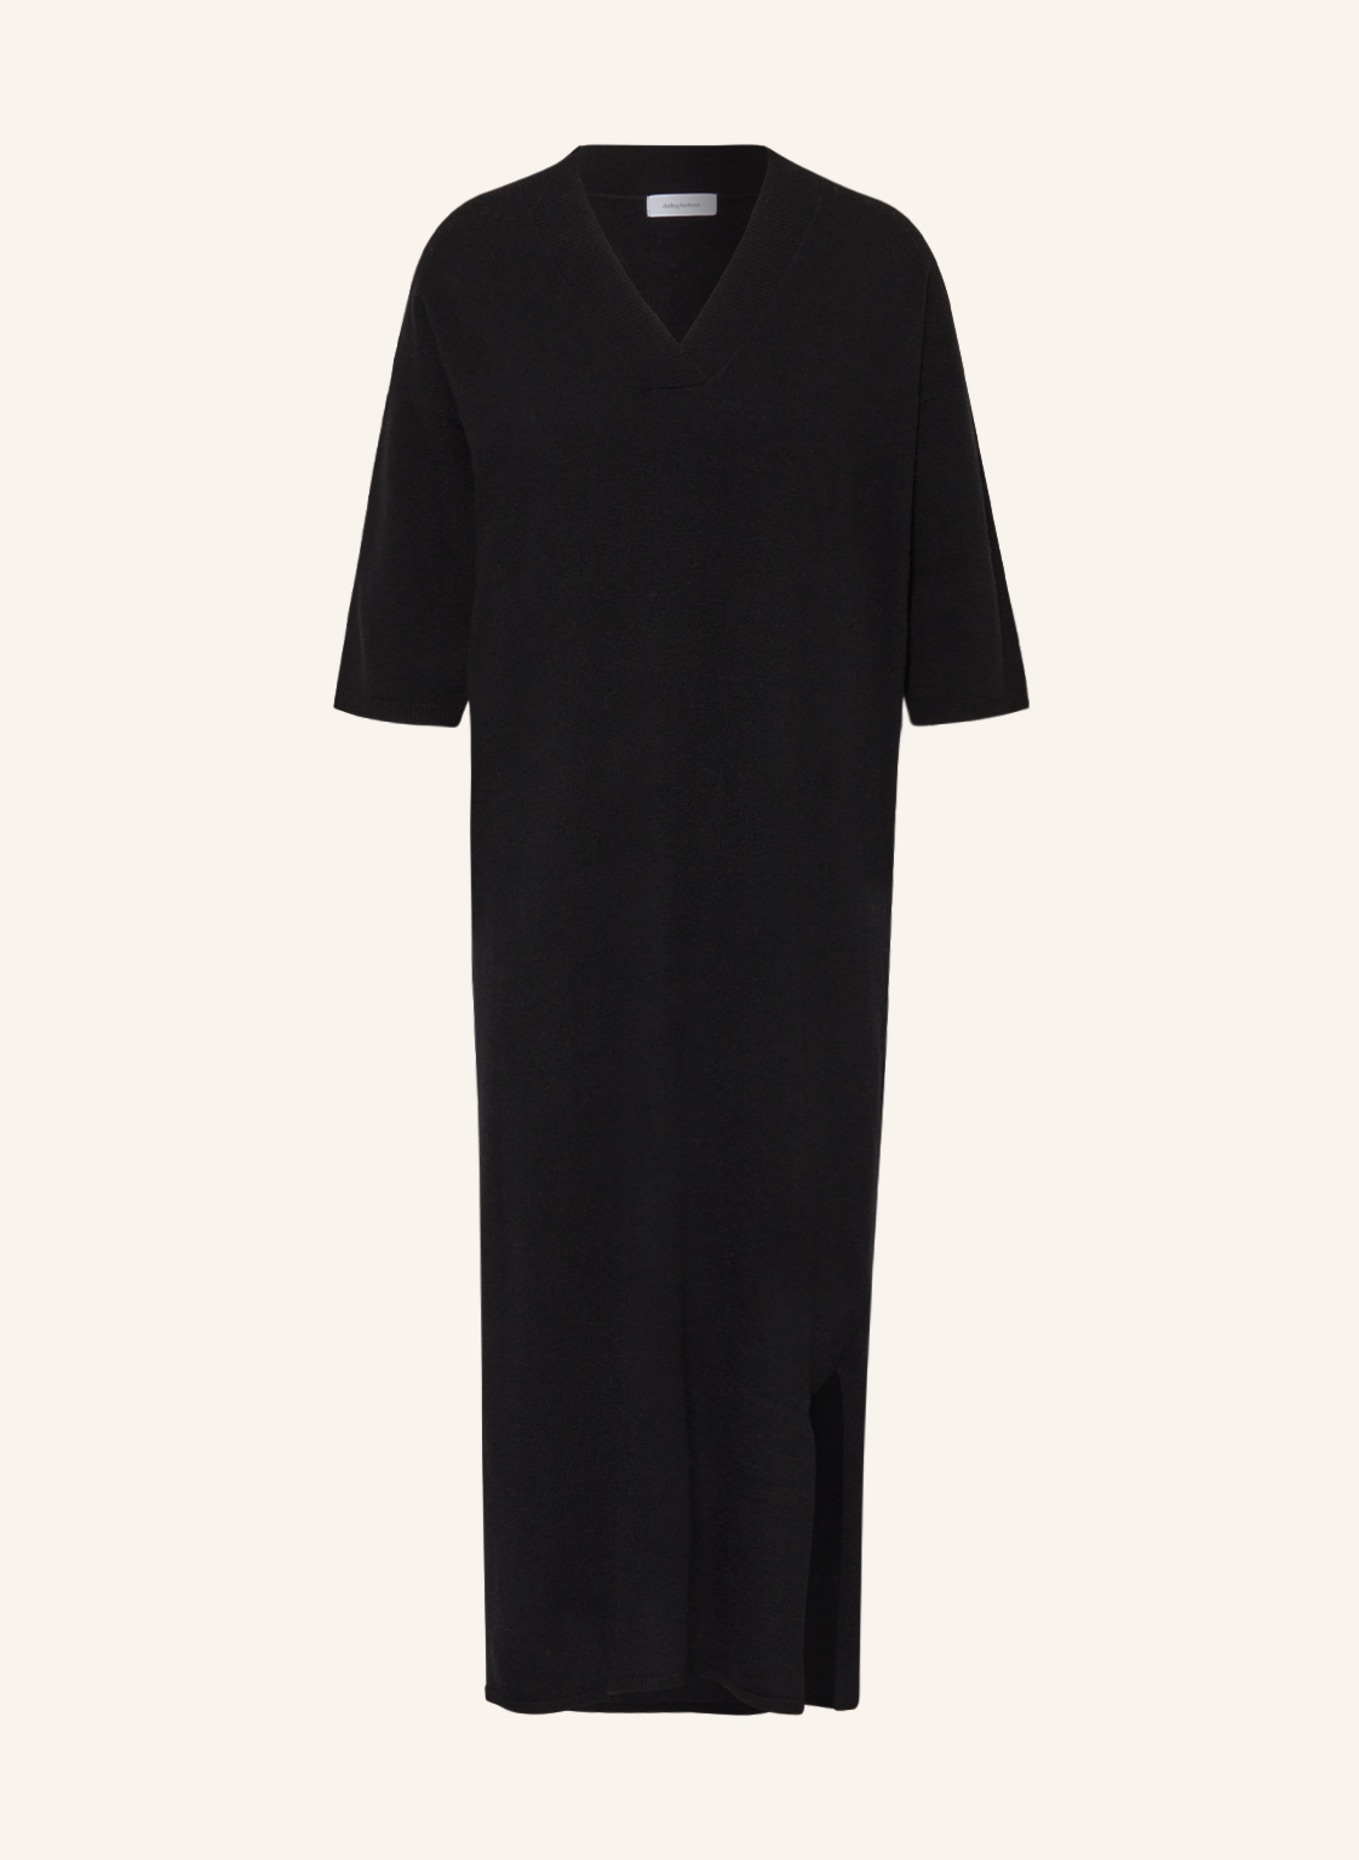 darling harbour Knit dress, Color: BLACK (Image 1)